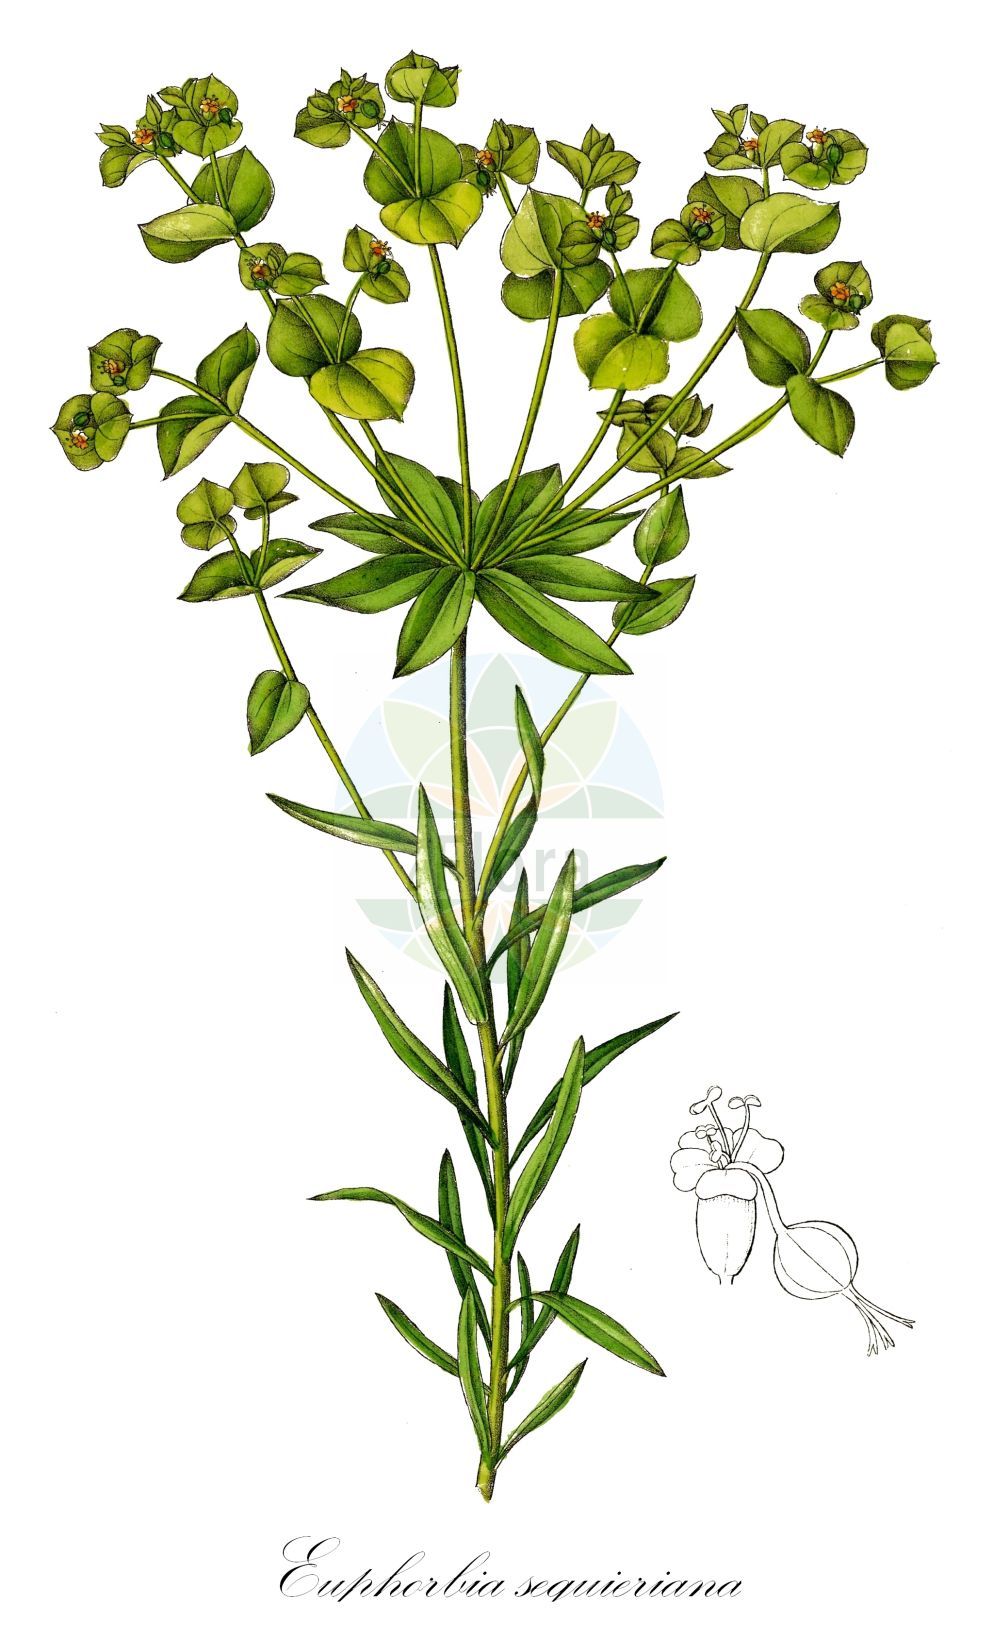 Historische Abbildung von Euphorbia seguieriana (Steppen-Wolfsmilch - Seguier's Spurge). Das Bild zeigt Blatt, Bluete, Frucht und Same. ---- Historical Drawing of Euphorbia seguieriana (Steppen-Wolfsmilch - Seguier's Spurge). The image is showing leaf, flower, fruit and seed.(Euphorbia seguieriana,Steppen-Wolfsmilch,Seguier's Spurge,Euphorbia seguieriana,Galarhoeus seguierianus,Tithymalus seguierianus,Steppen-Wolfsmilch,Seguier's Spurge,Steppe Spurge,Euphorbia,Wolfsmilch,Spurge,Euphorbiaceae,Wolfsmilchgewächse,Spurge family,Blatt,Bluete,Frucht,Same,leaf,flower,fruit,seed,Dietrich (1833-1844))